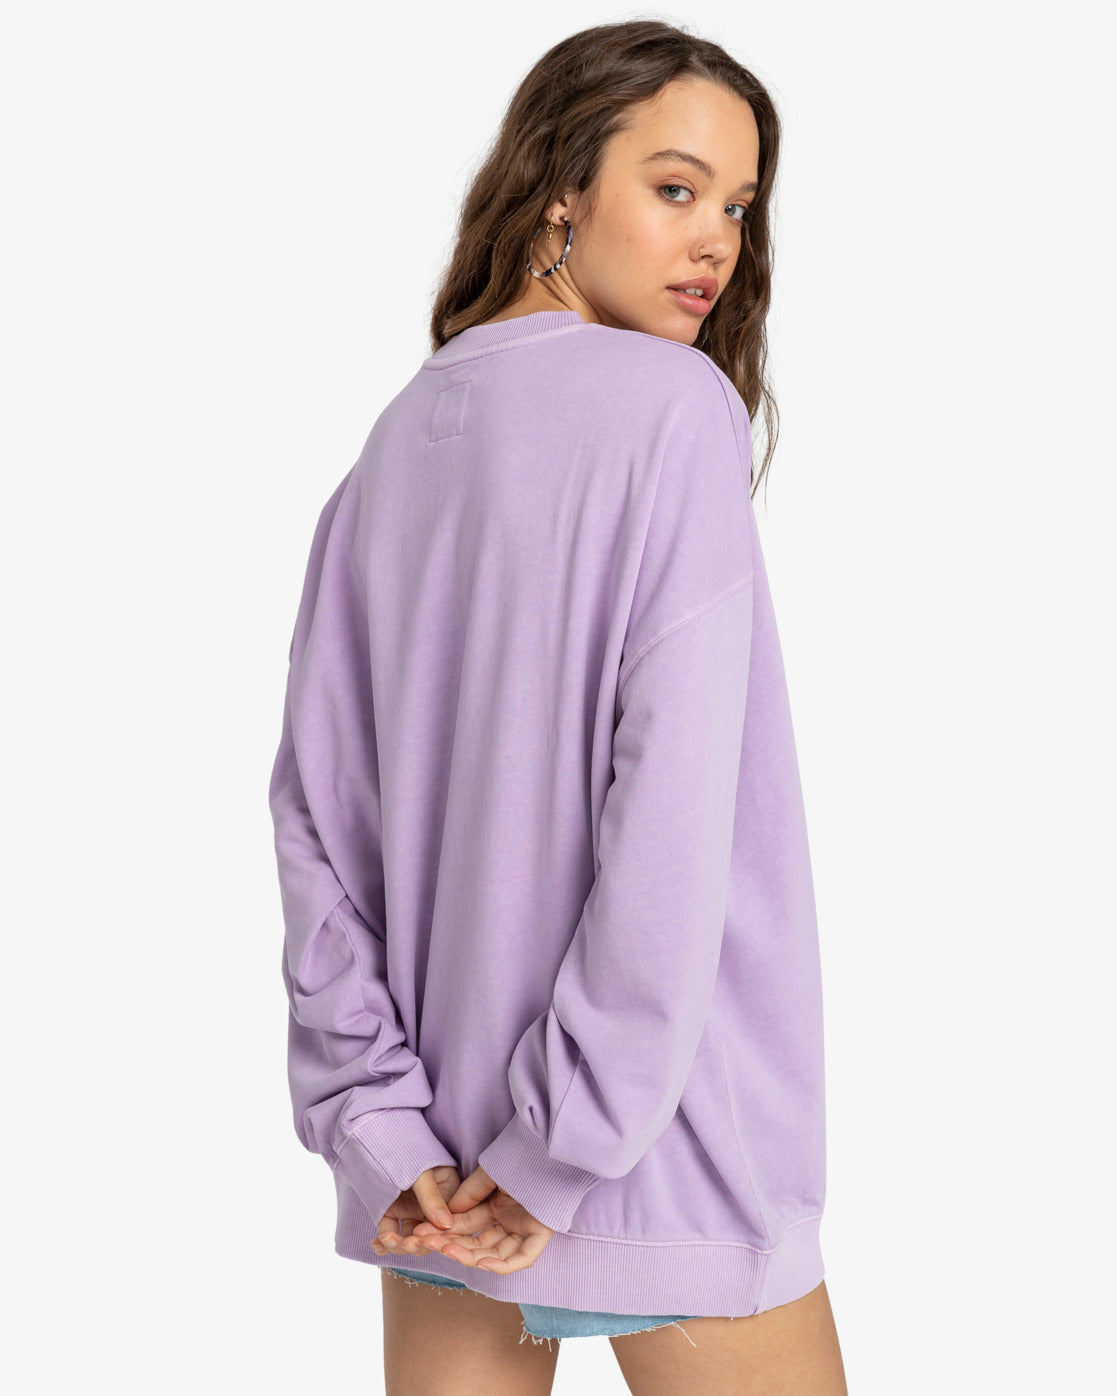 Billabong Ride In - Langärmliges Sweatshirt für Frauen - Peaceful Lilac